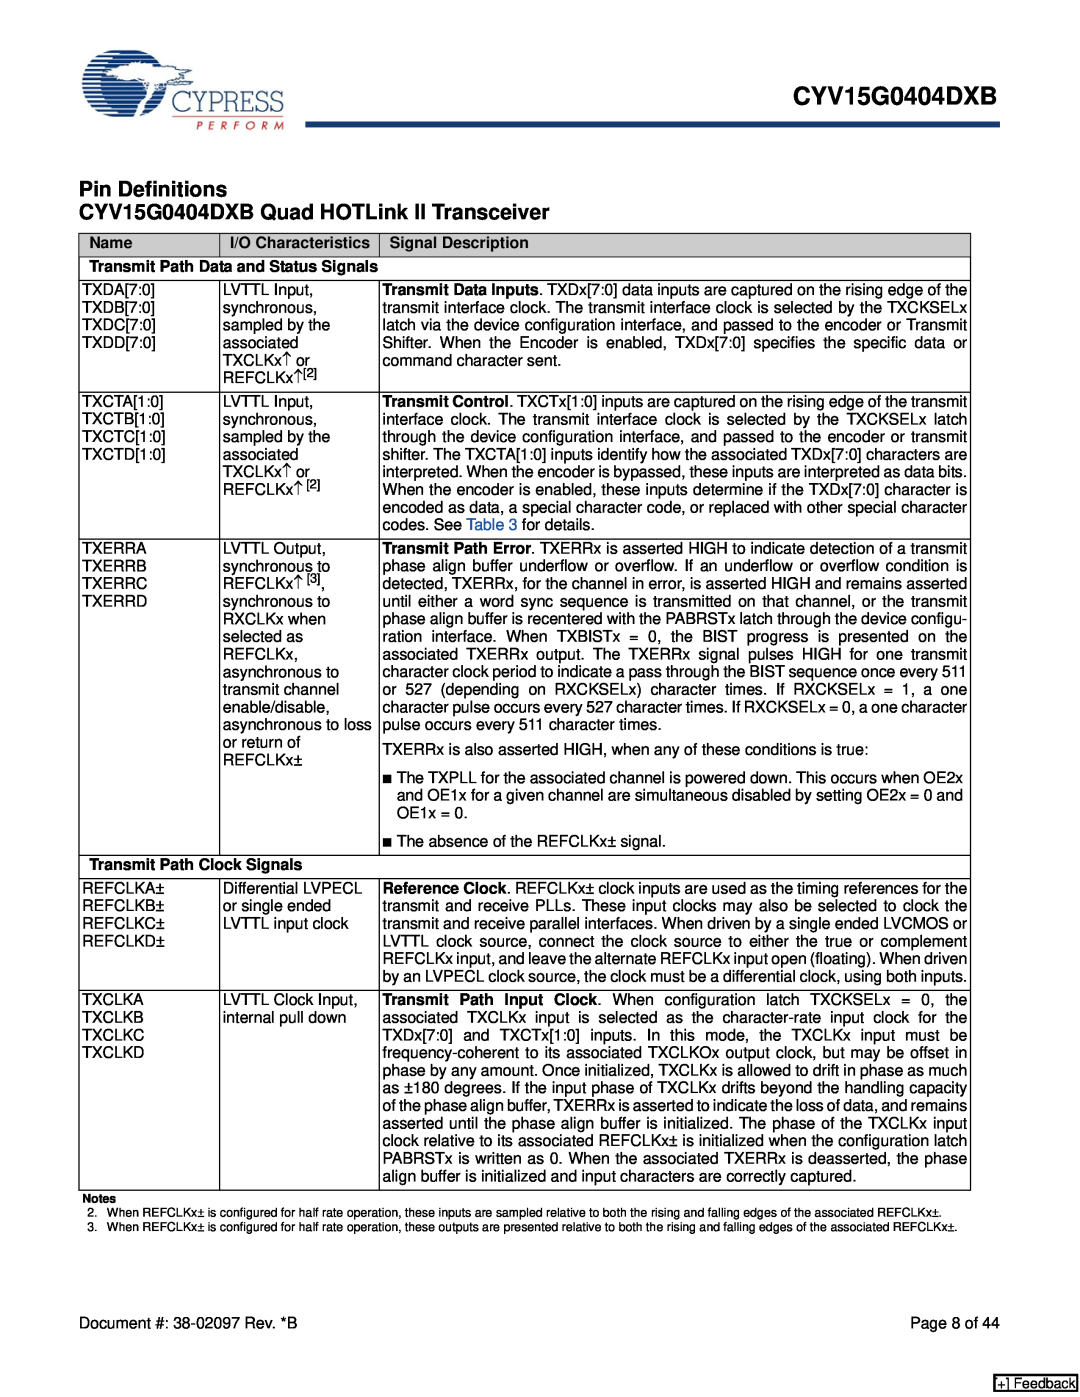 Cypress manual Pin Definitions CYV15G0404DXB Quad HOTLink II Transceiver, Name, I/O Characteristics, Signal Description 